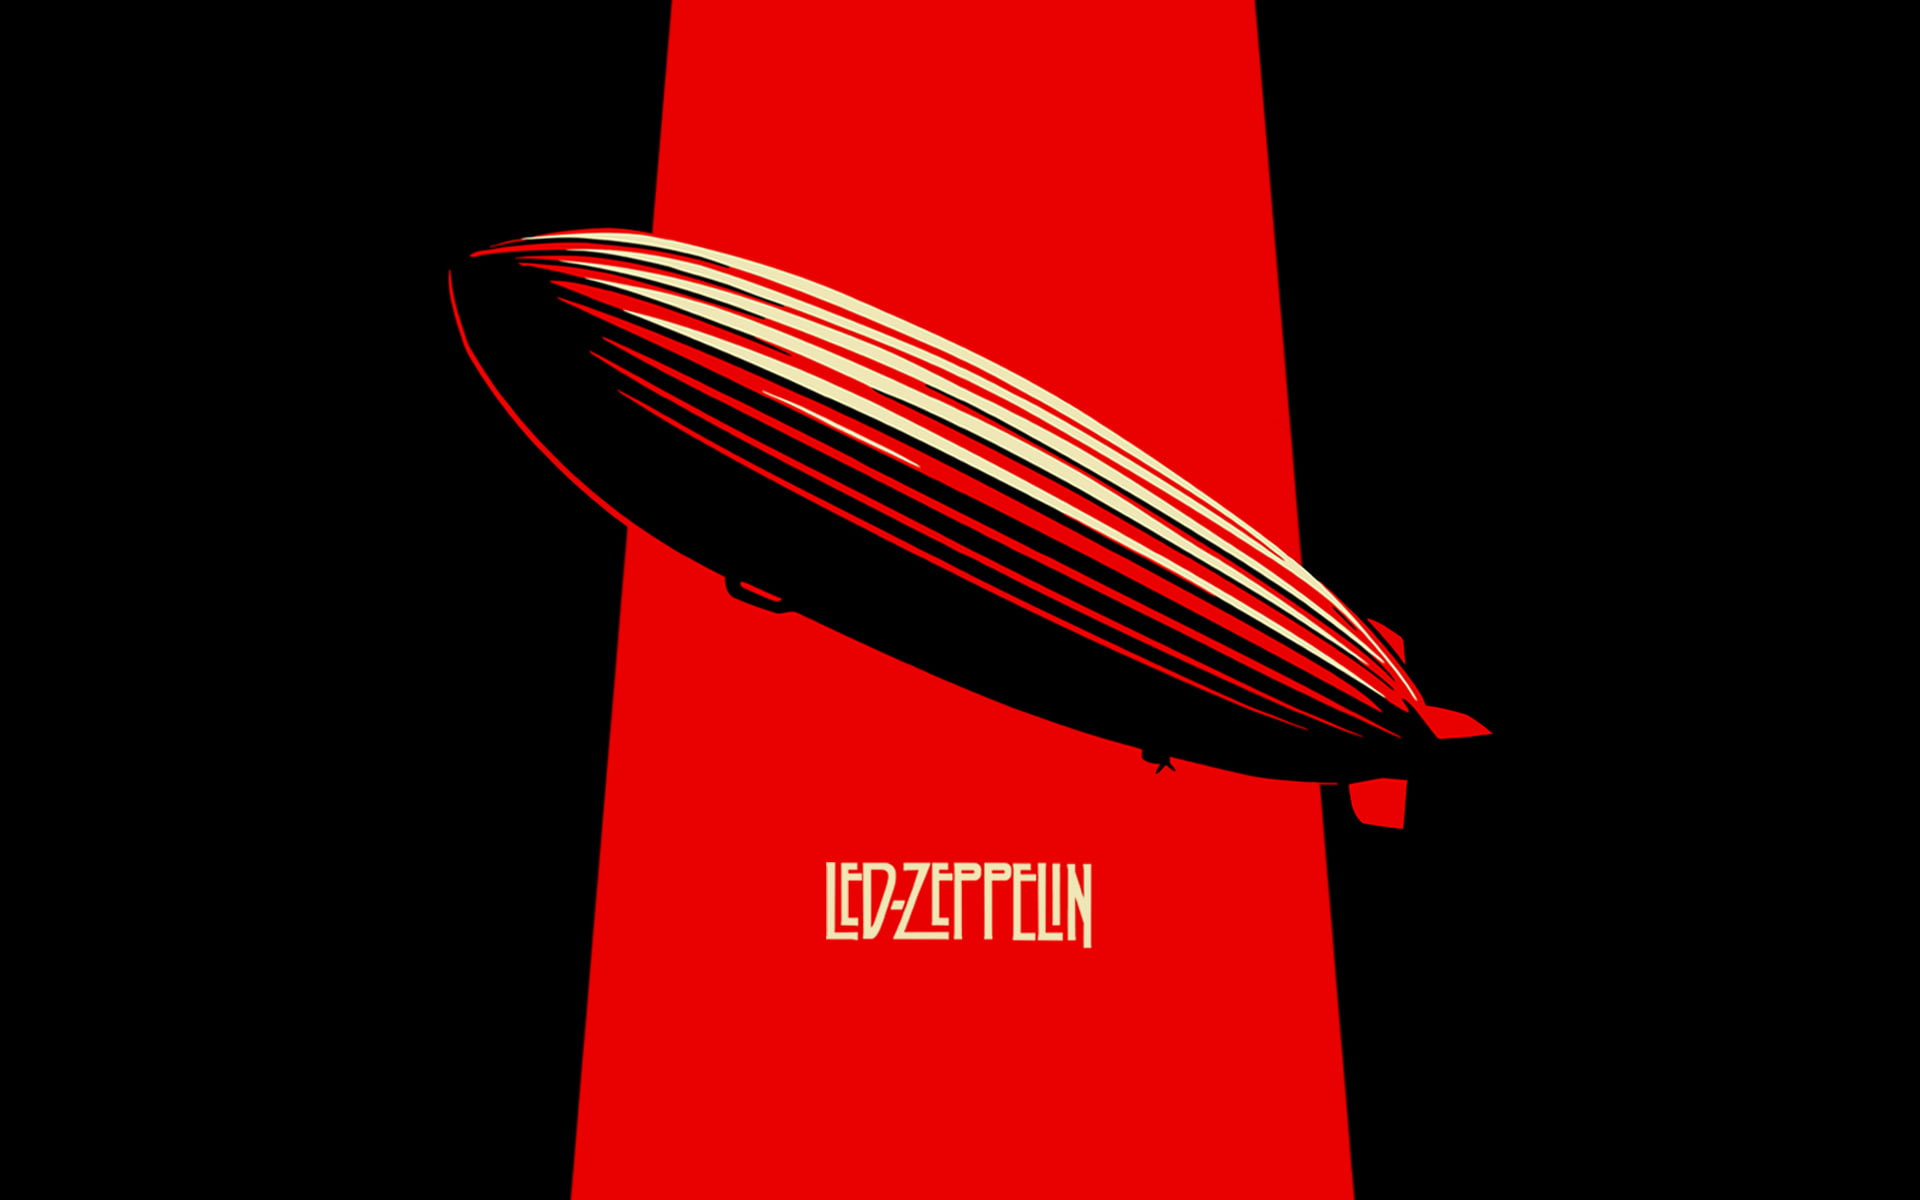 Led Zeppelin wallpaper, music, musician, minimalism • Wallpaper For You HD Wallpaper For Desktop & Mobile